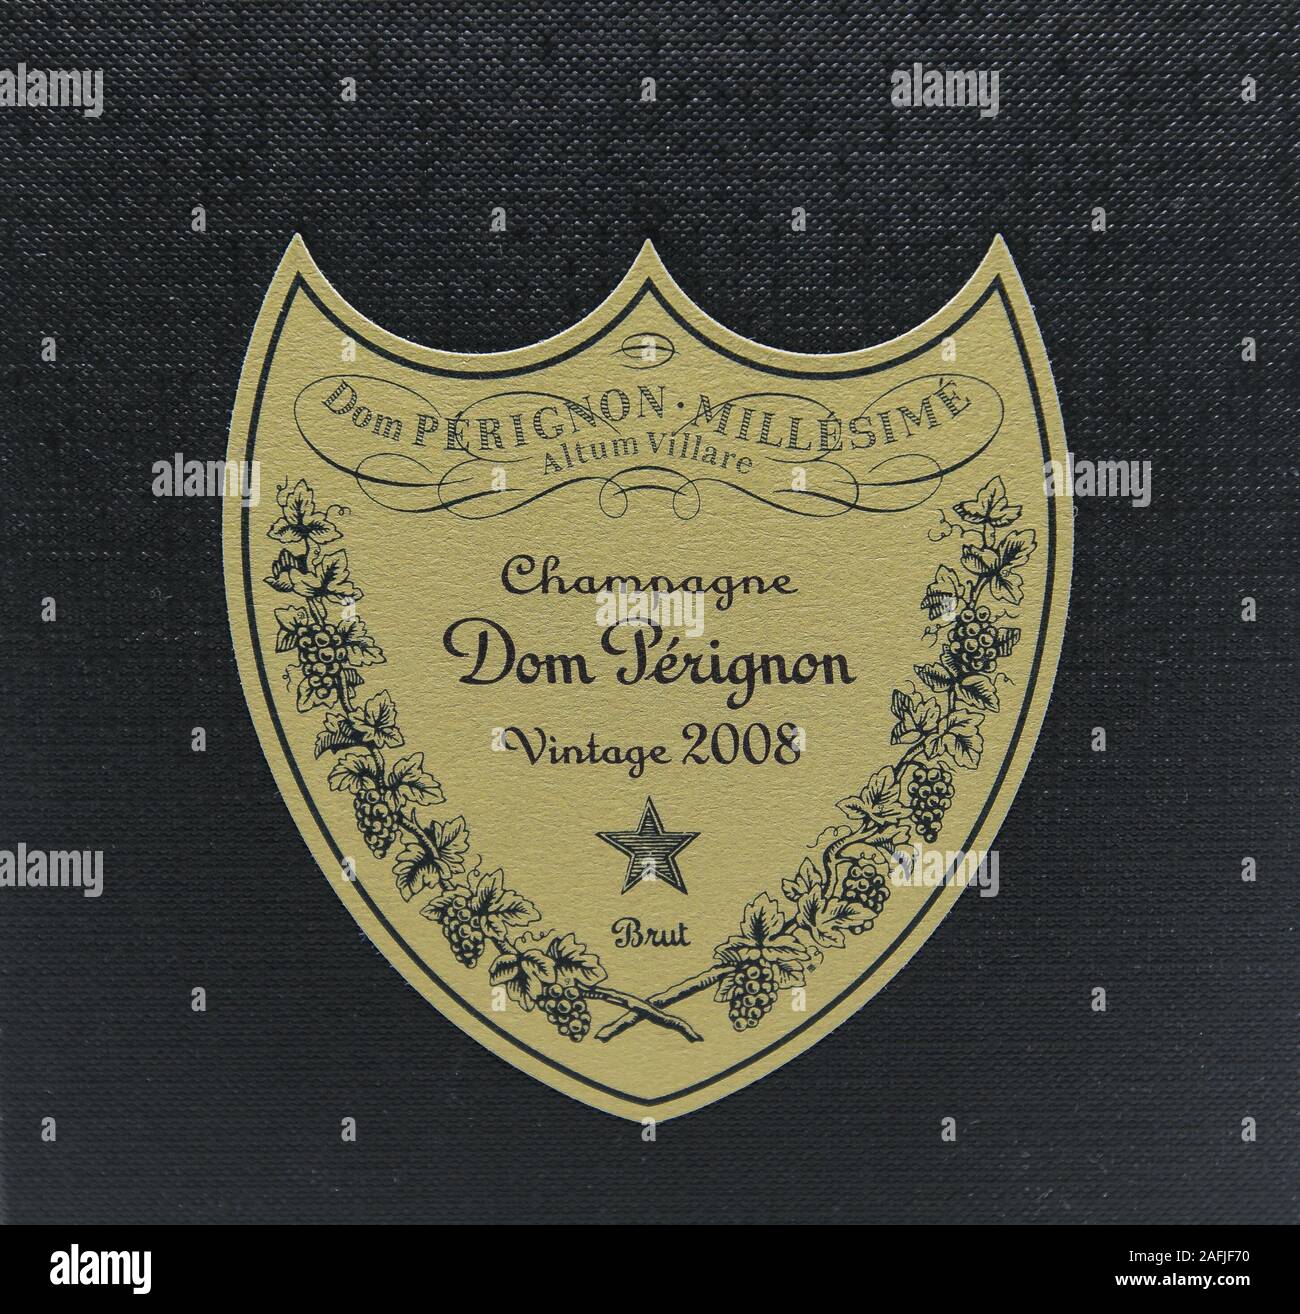 New York, 12/8/2019: Closeup view of Dom Perignon Vintage 2008 champagne box label. Stock Photo